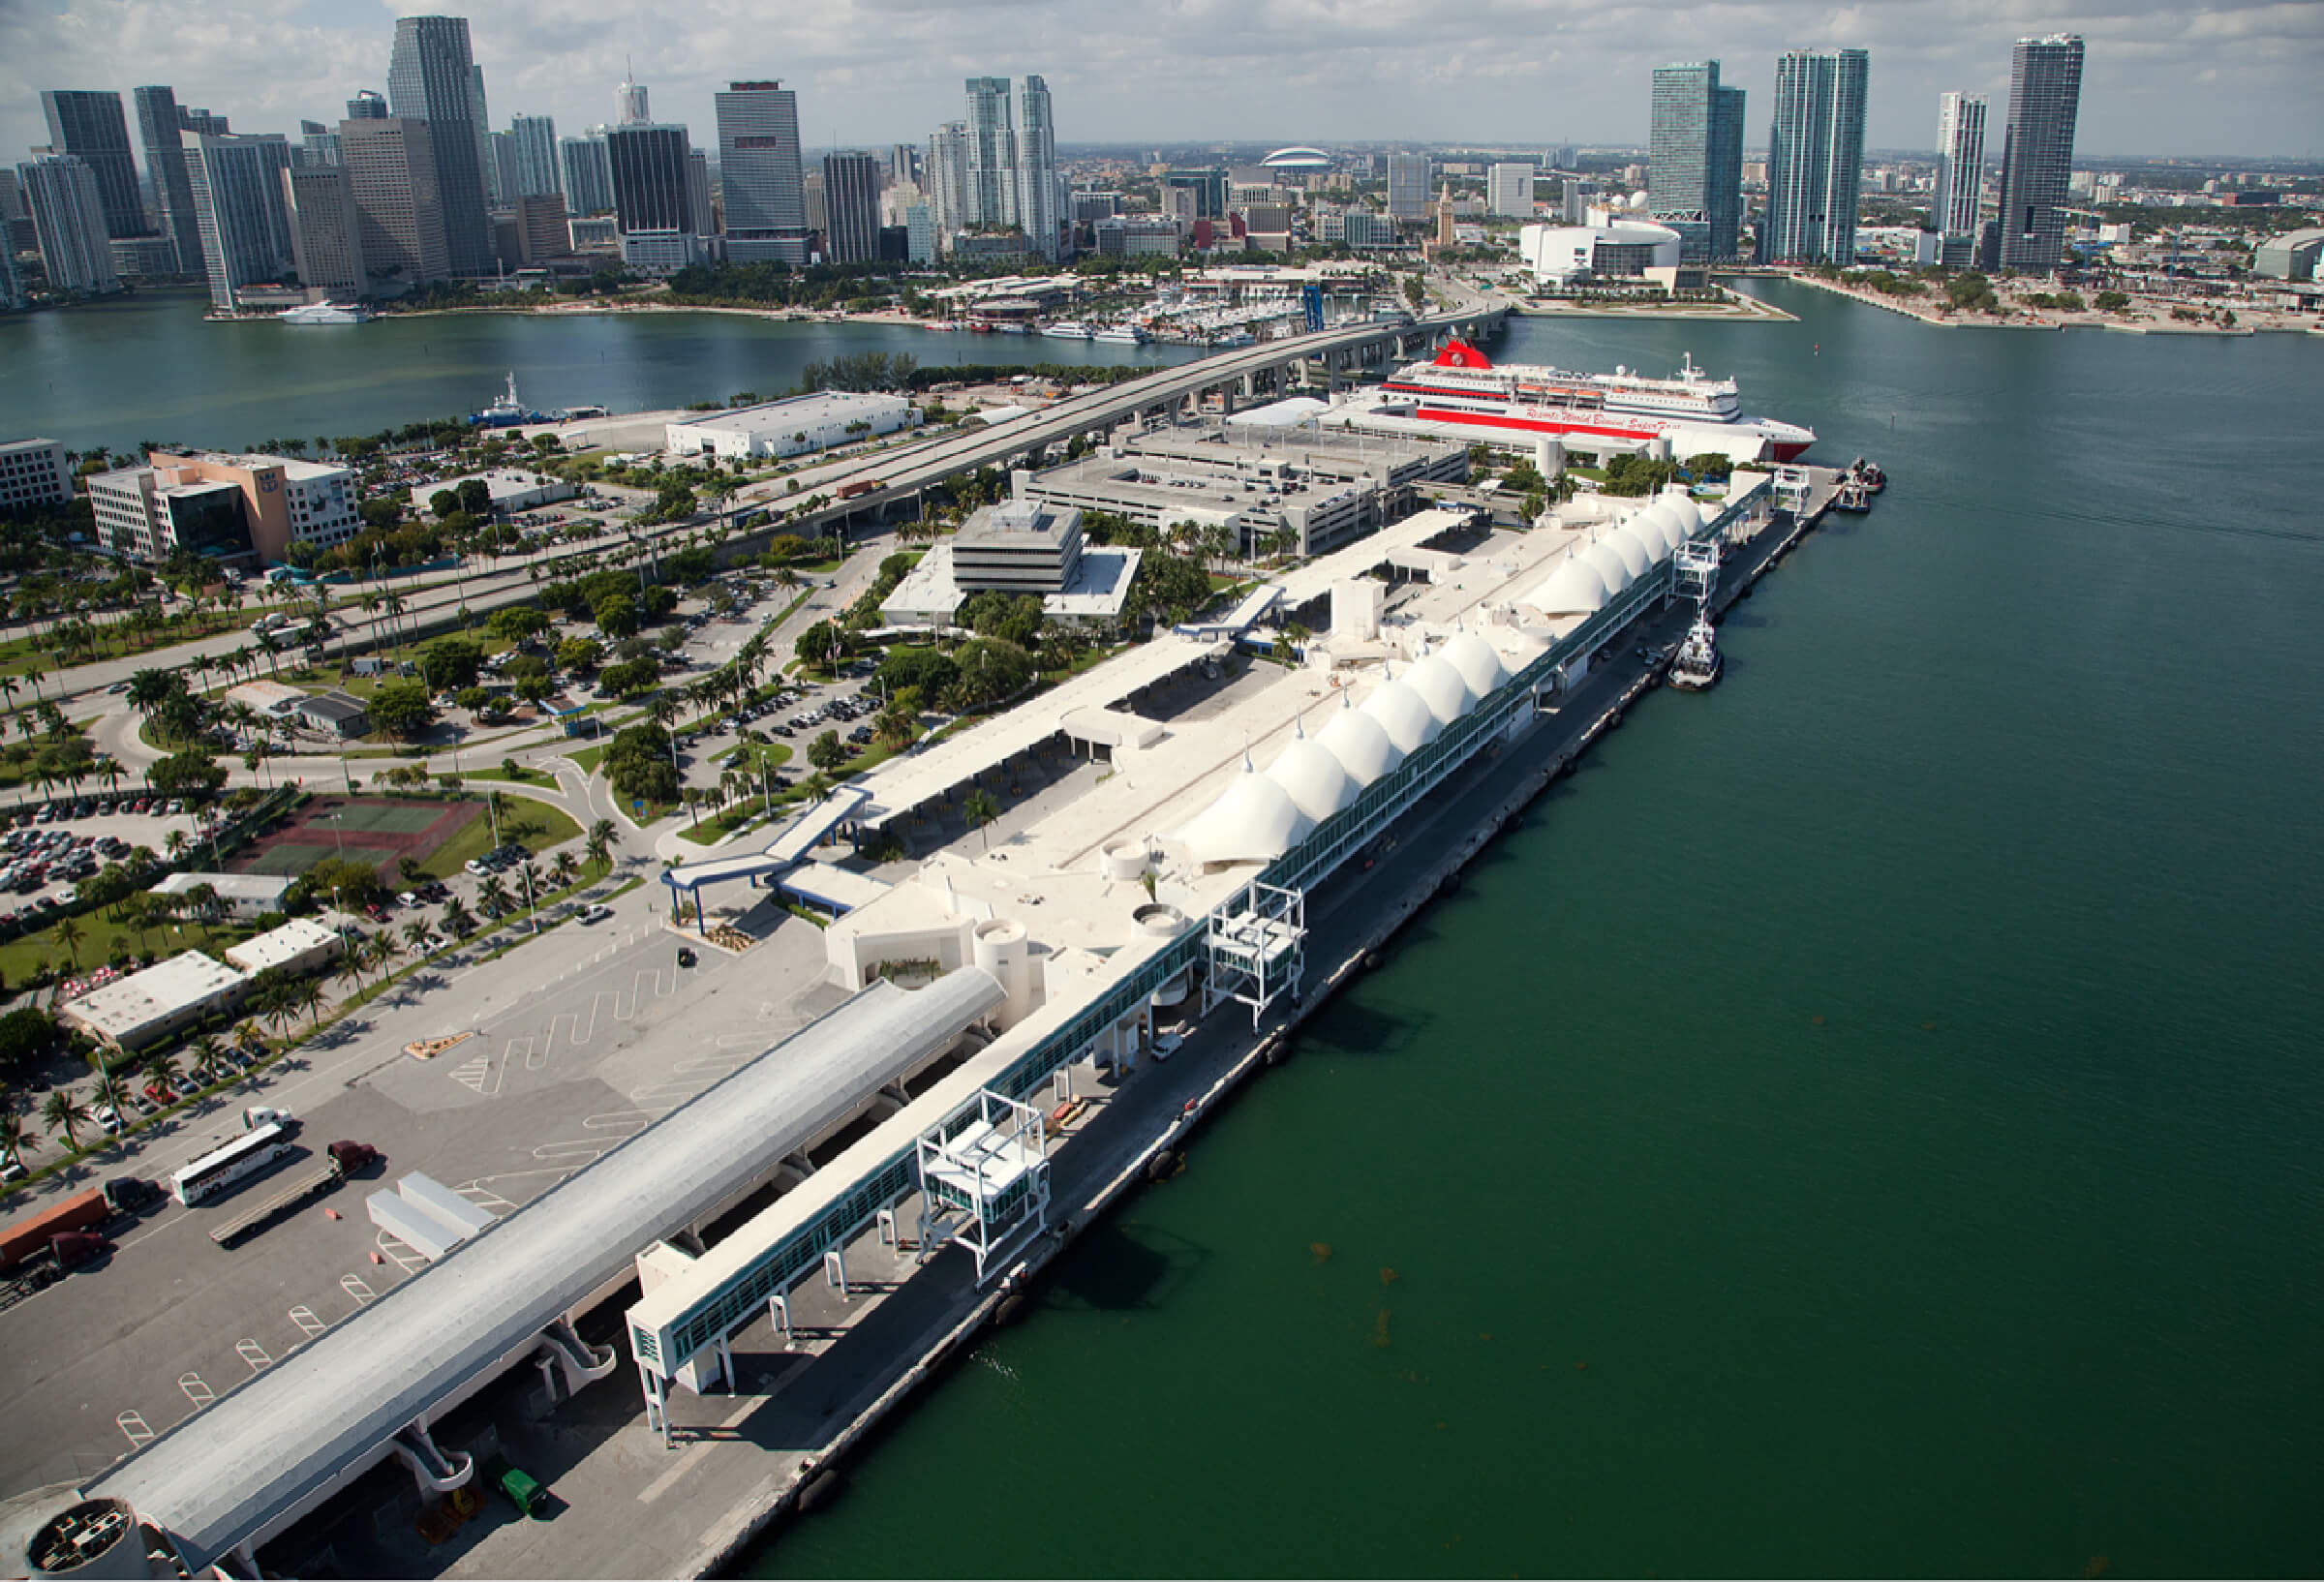 Port of Miami Cruise Terminals F & G